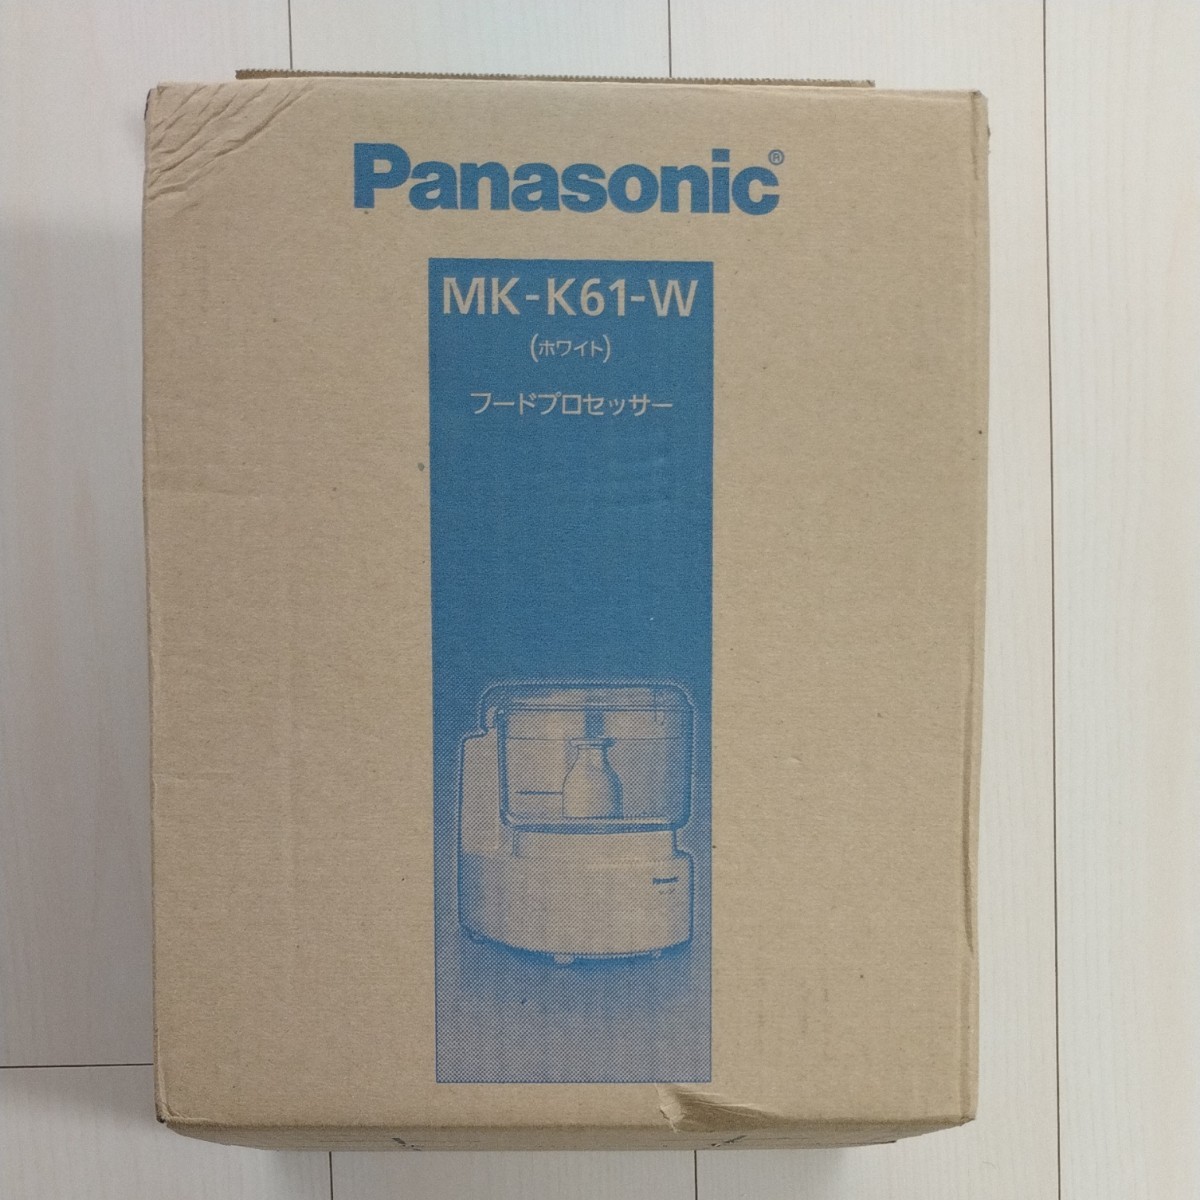 フードプロセッサー MK-K61-W （ホワイト） パナソニックフードプロセッサー Panasonic パナソニック